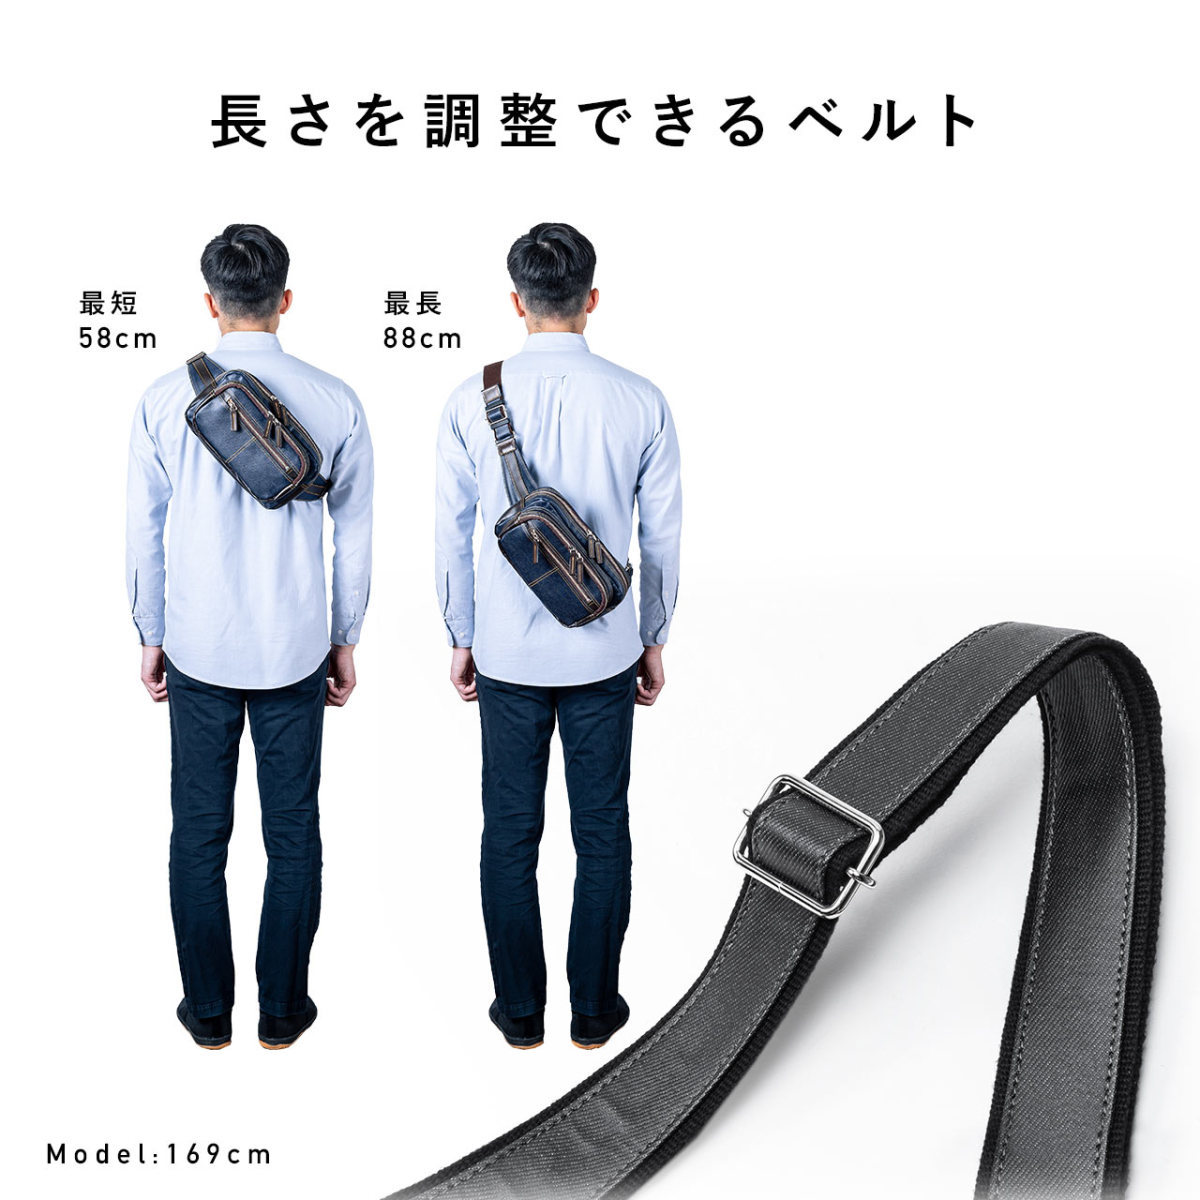 ボディバッグ メンズ ショルダーバッグ 簡易防水 撥水 日本製 豊岡鞄 デニム 斜めがけ メッセンジャー ウエストポーチ 小さめ バック